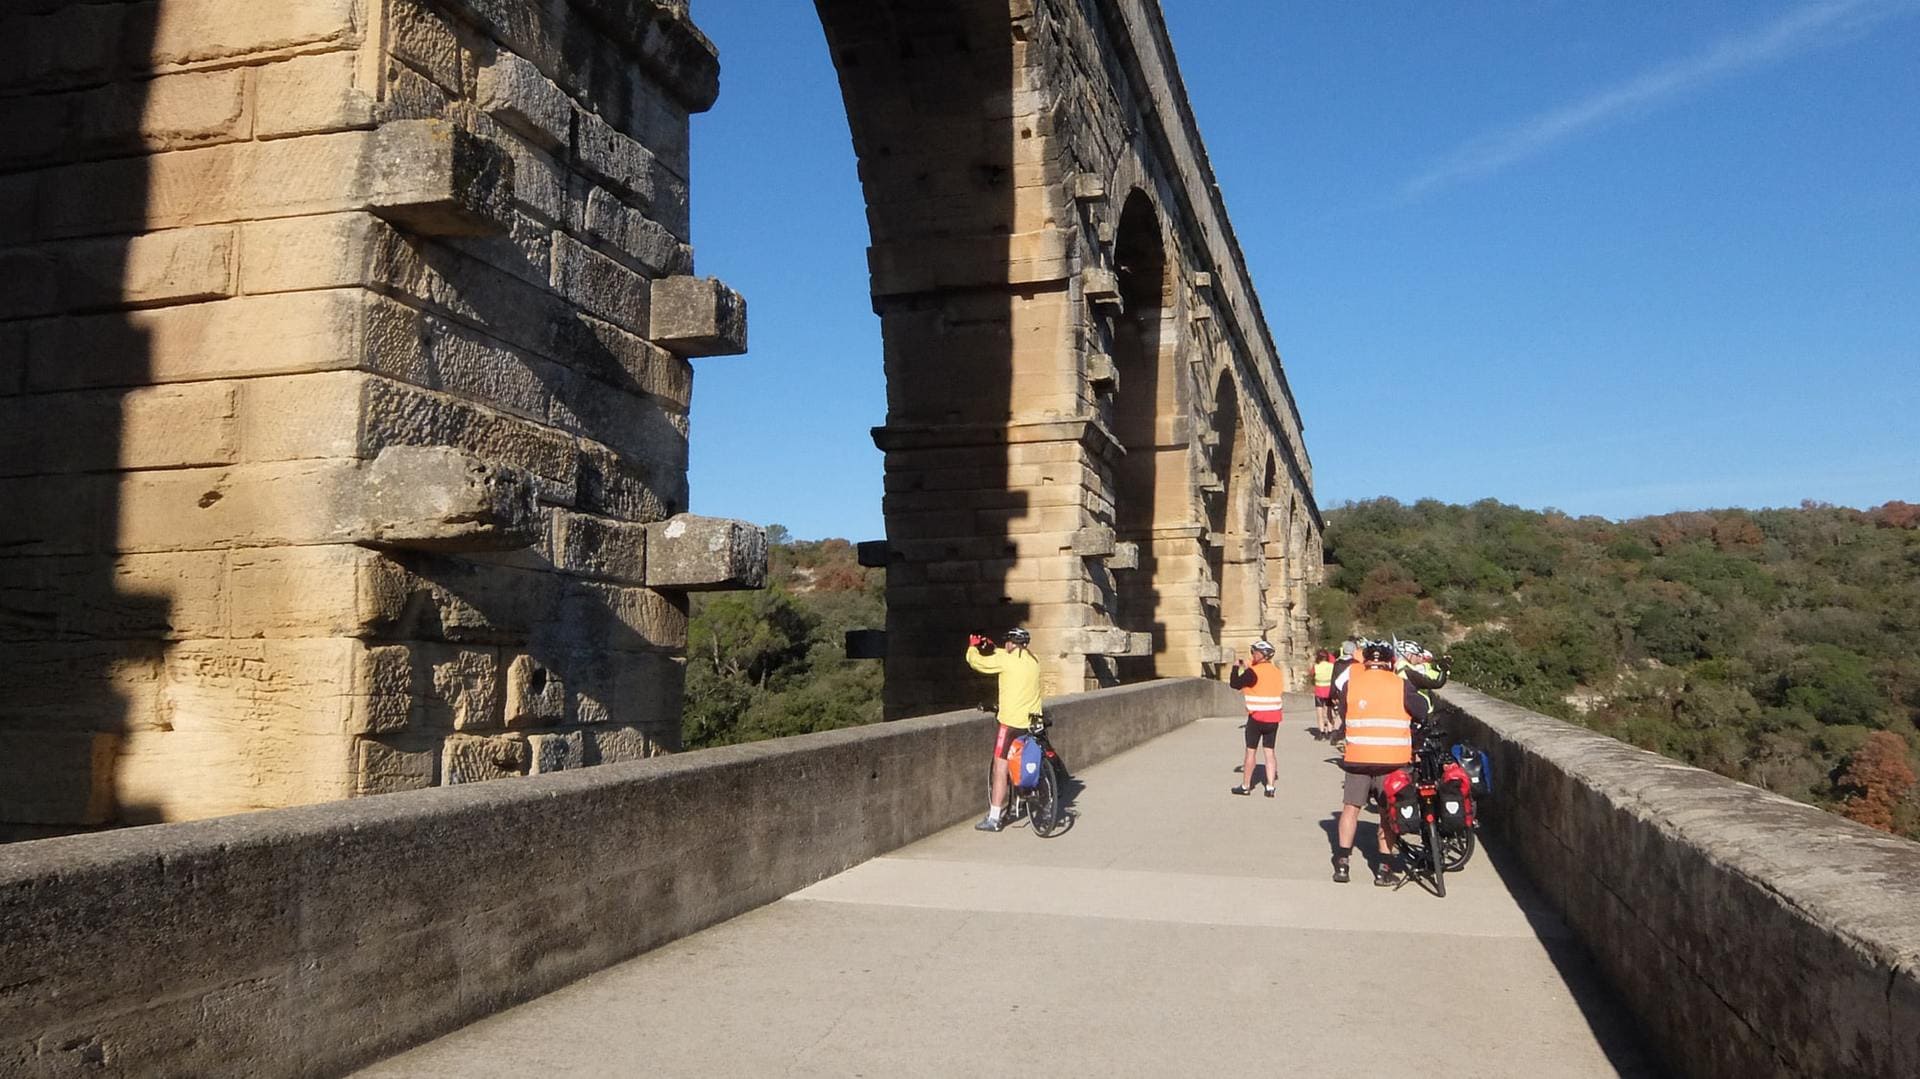 Frankreich Pont du Gard bei Vers-Pont-du-Gard, Rad- und Fußweg auf der Brücke